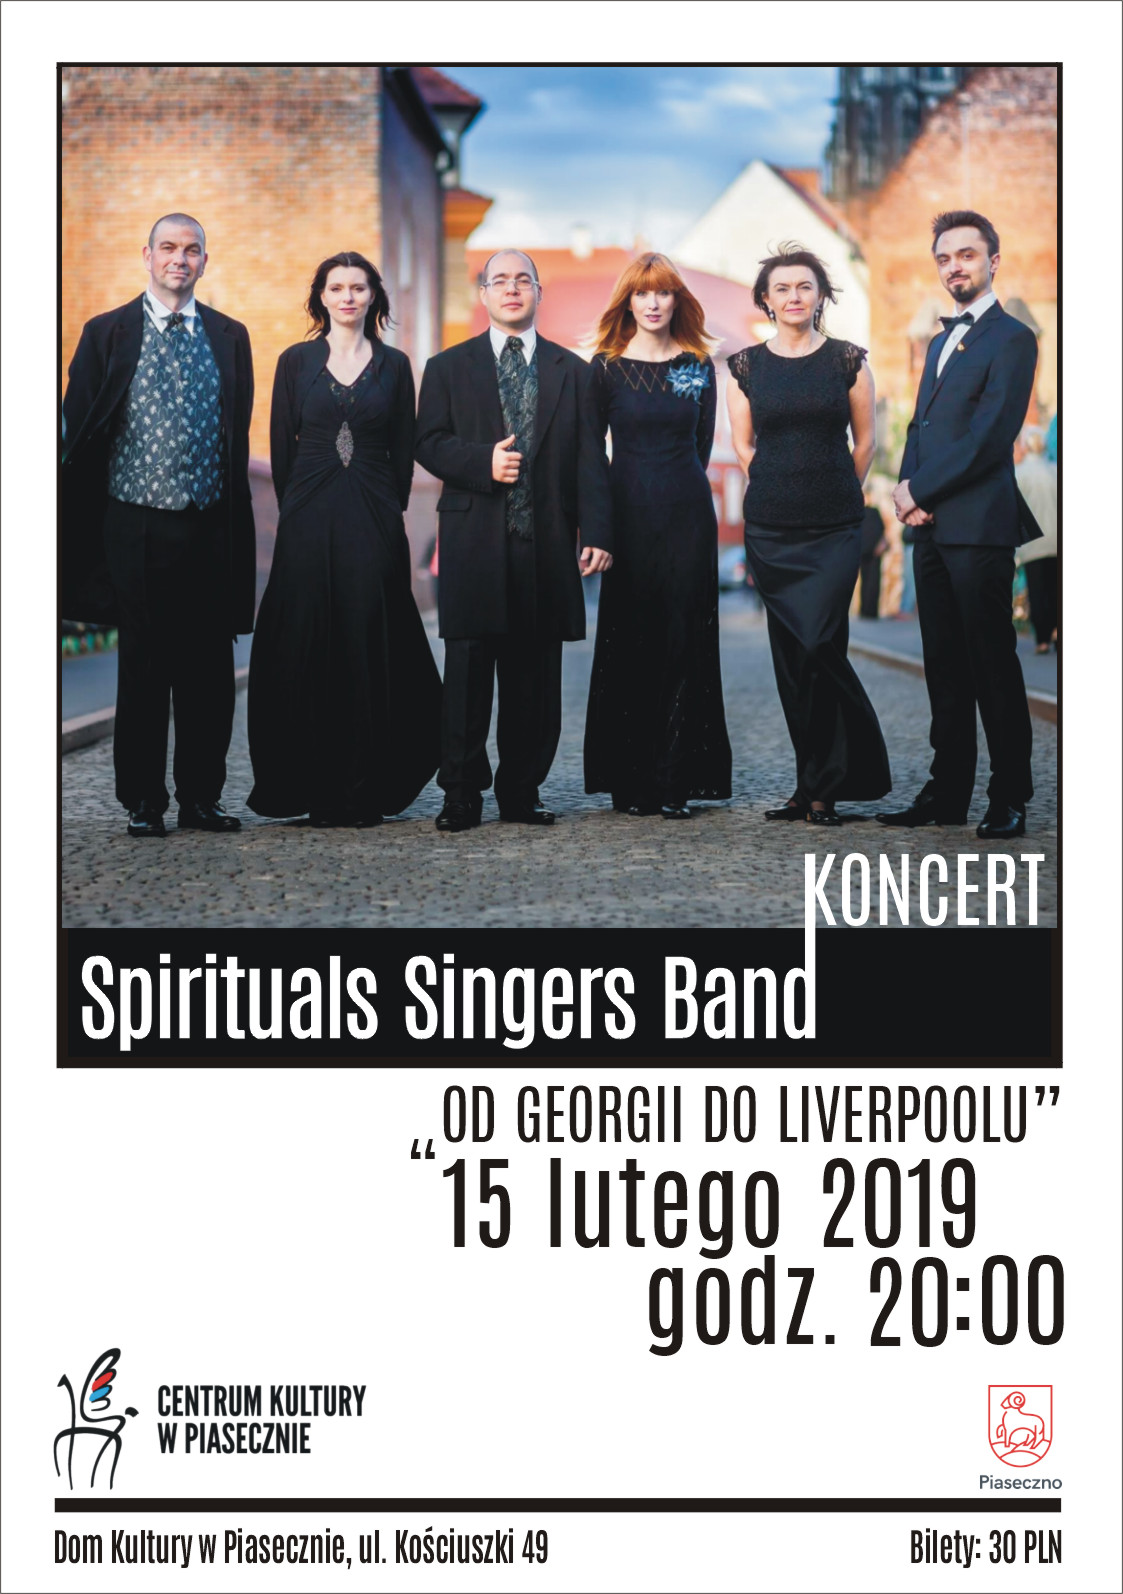 Koncert Spirituals Singers Band w Piasecznie